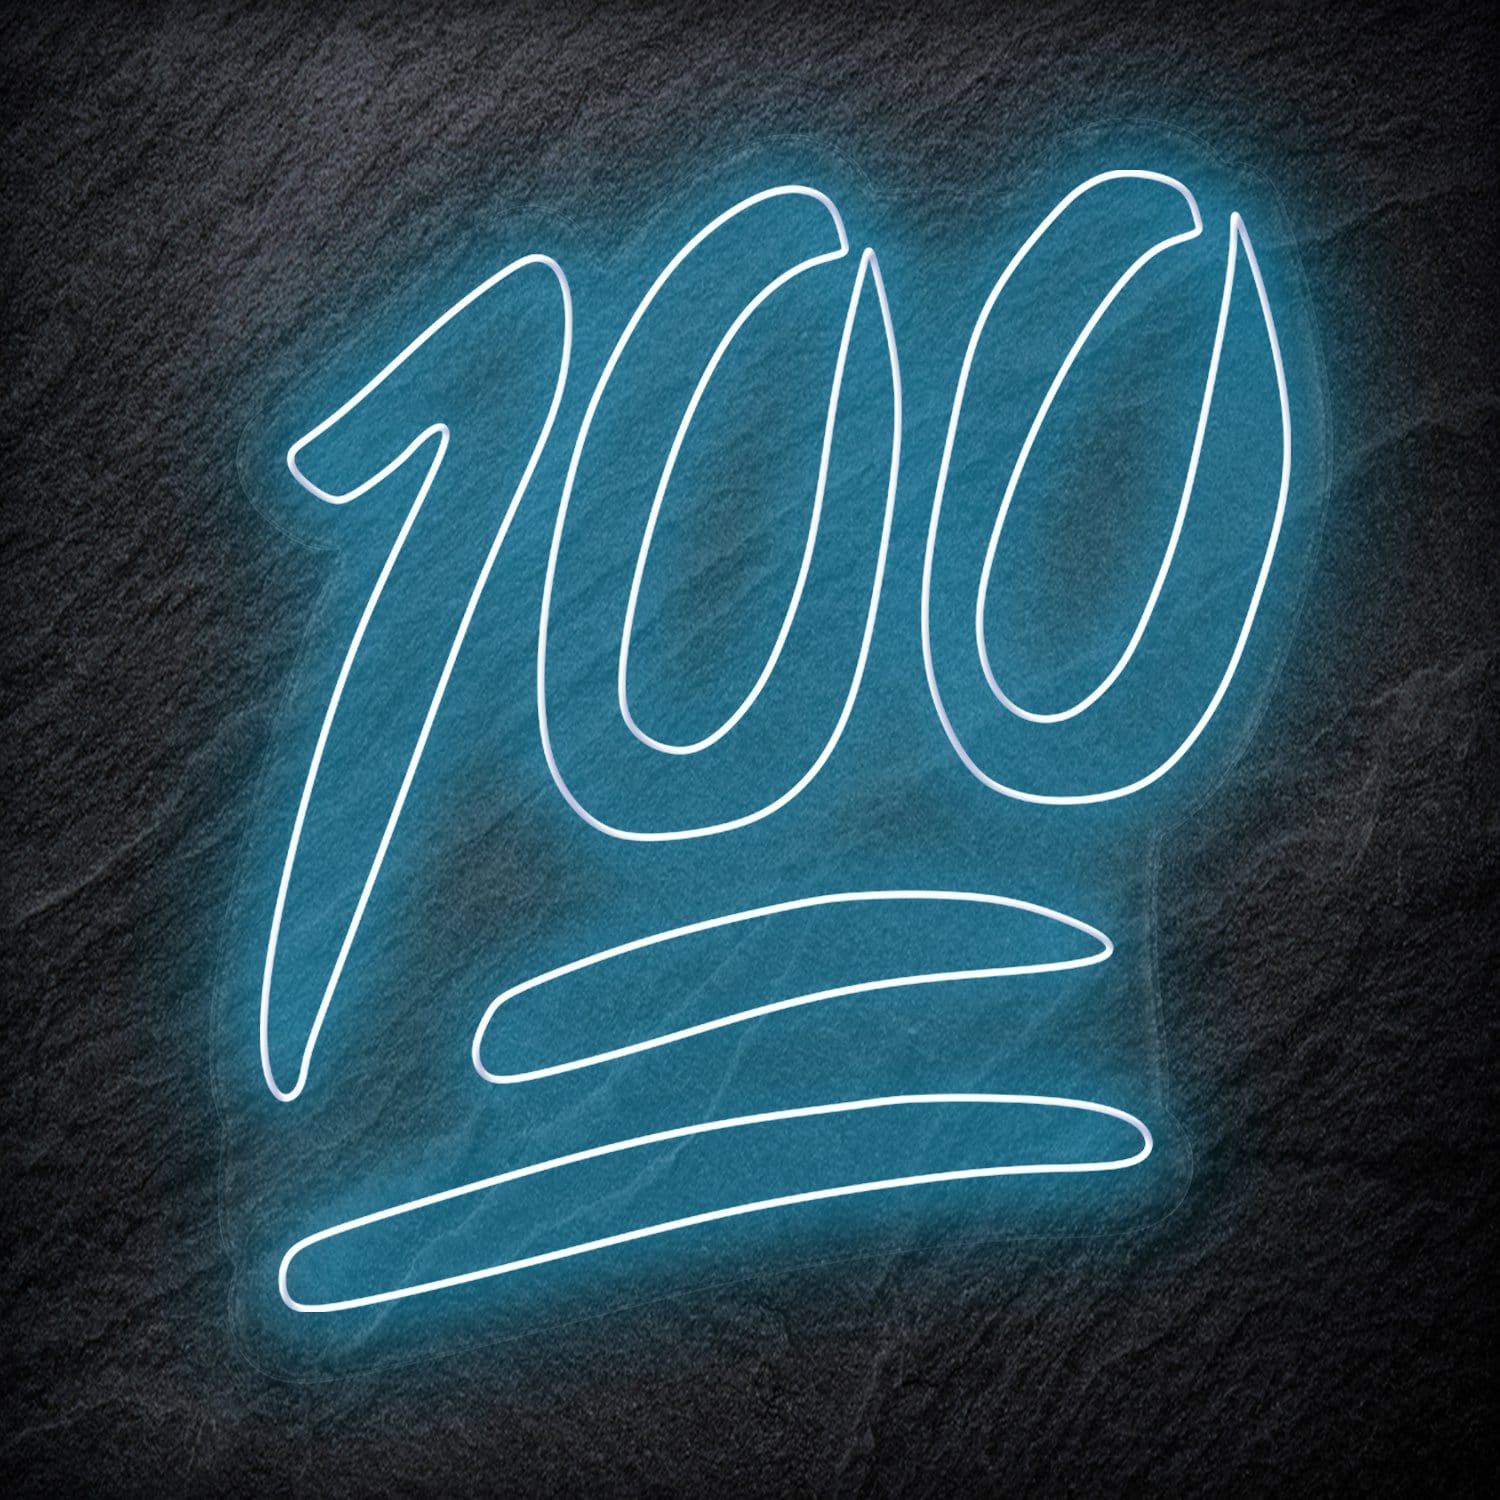 "100" LED Neon Schriftzug - NEONEVERGLOW